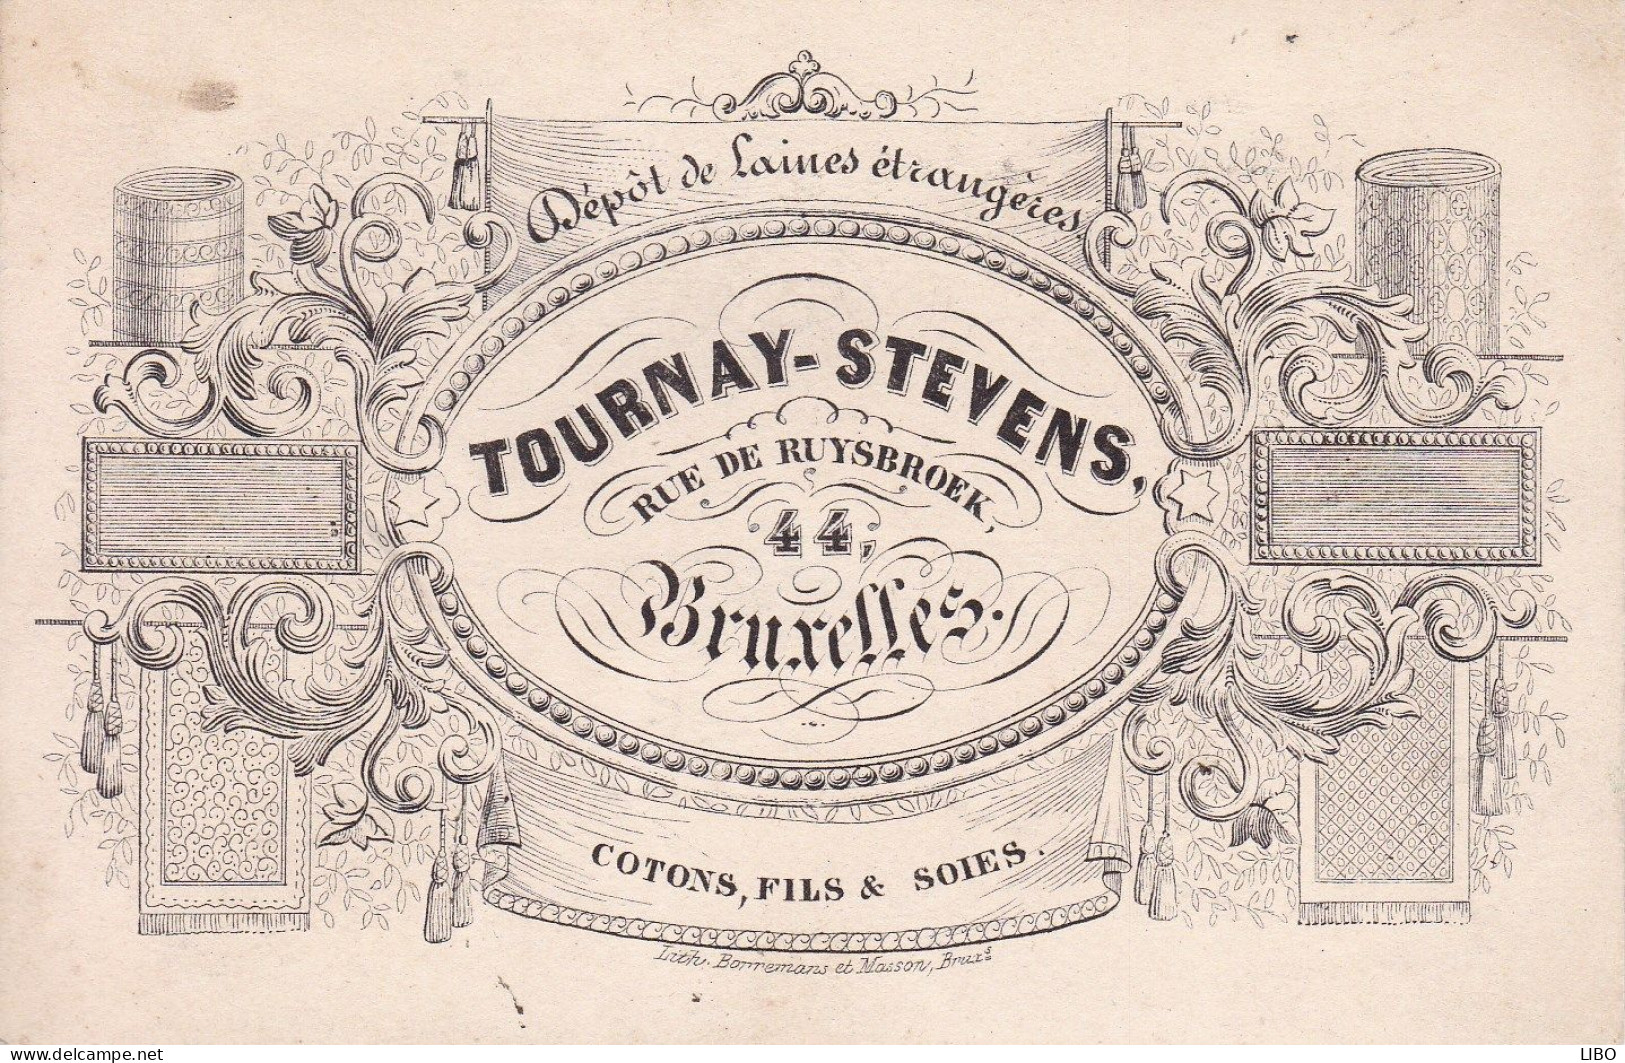 BRUXELLES Laines TOURNAY-STEVENS Rue De Ruysbroek Cotons Fils Et Soies Carte De Visite Format Carte Postale C. 1860 - Tarjetas De Visita